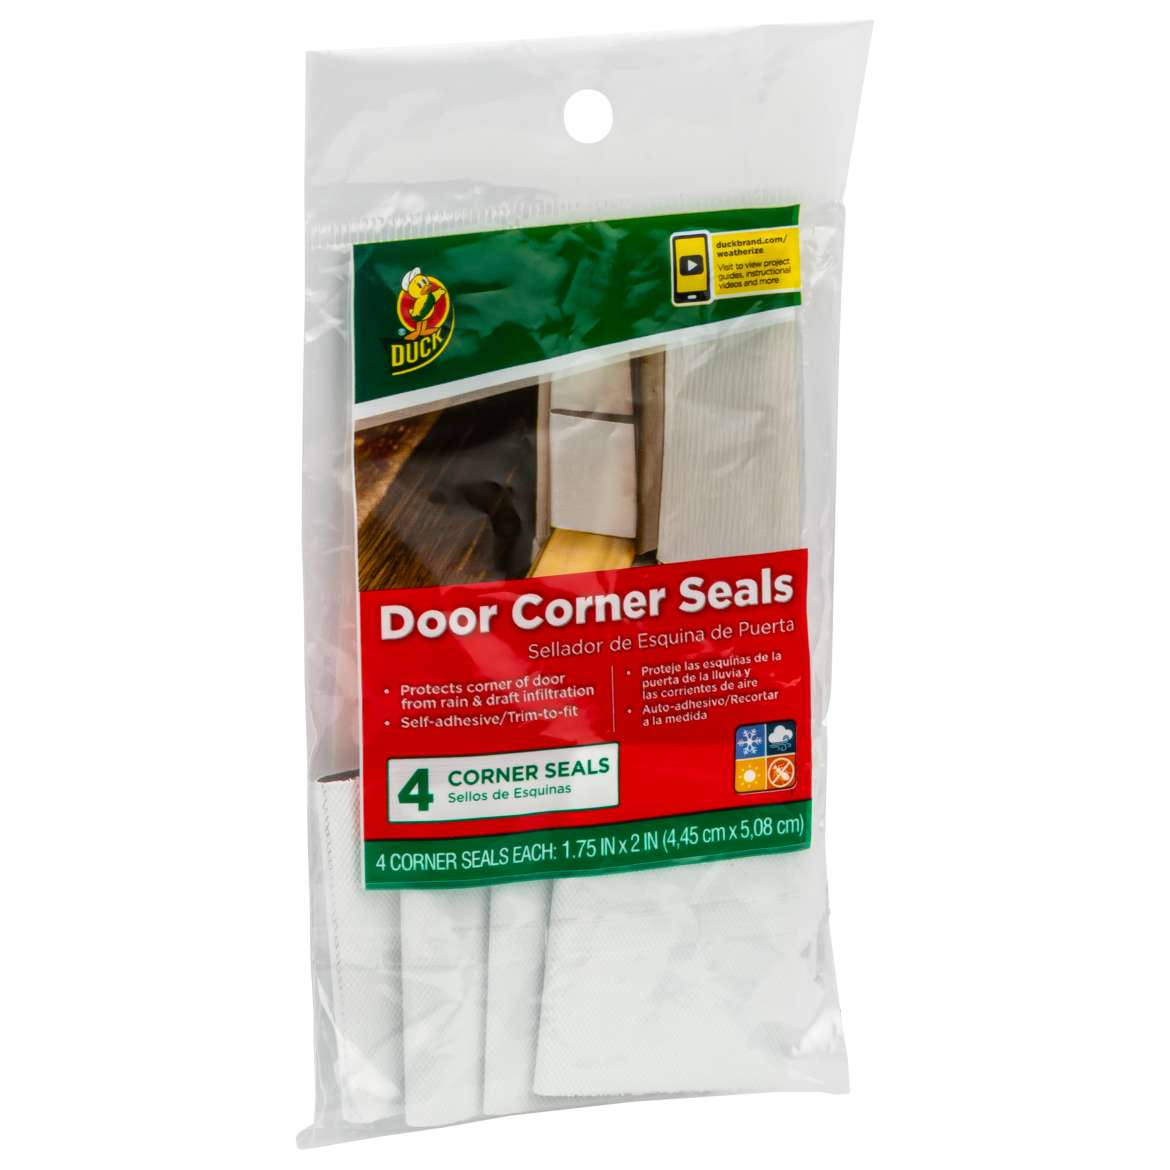 Duck® Brand Door Corner Seals - White, 4 pk, 1.75 in. x 2 in.